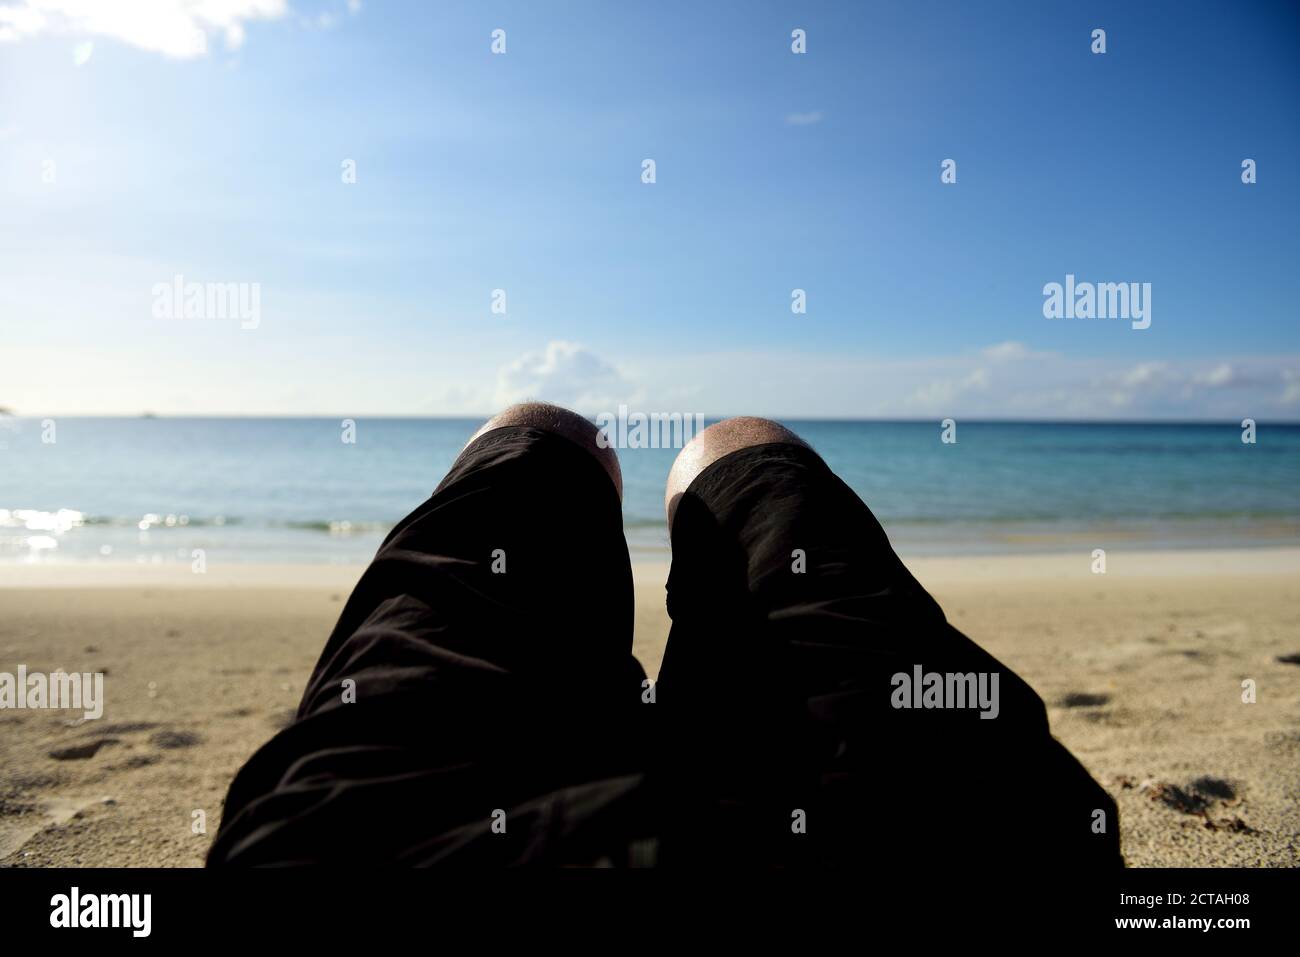 Point de vue de l'homme se reposant sur une plage déserte des Caraïbes avec mer bleu, arrière-plan flou Banque D'Images